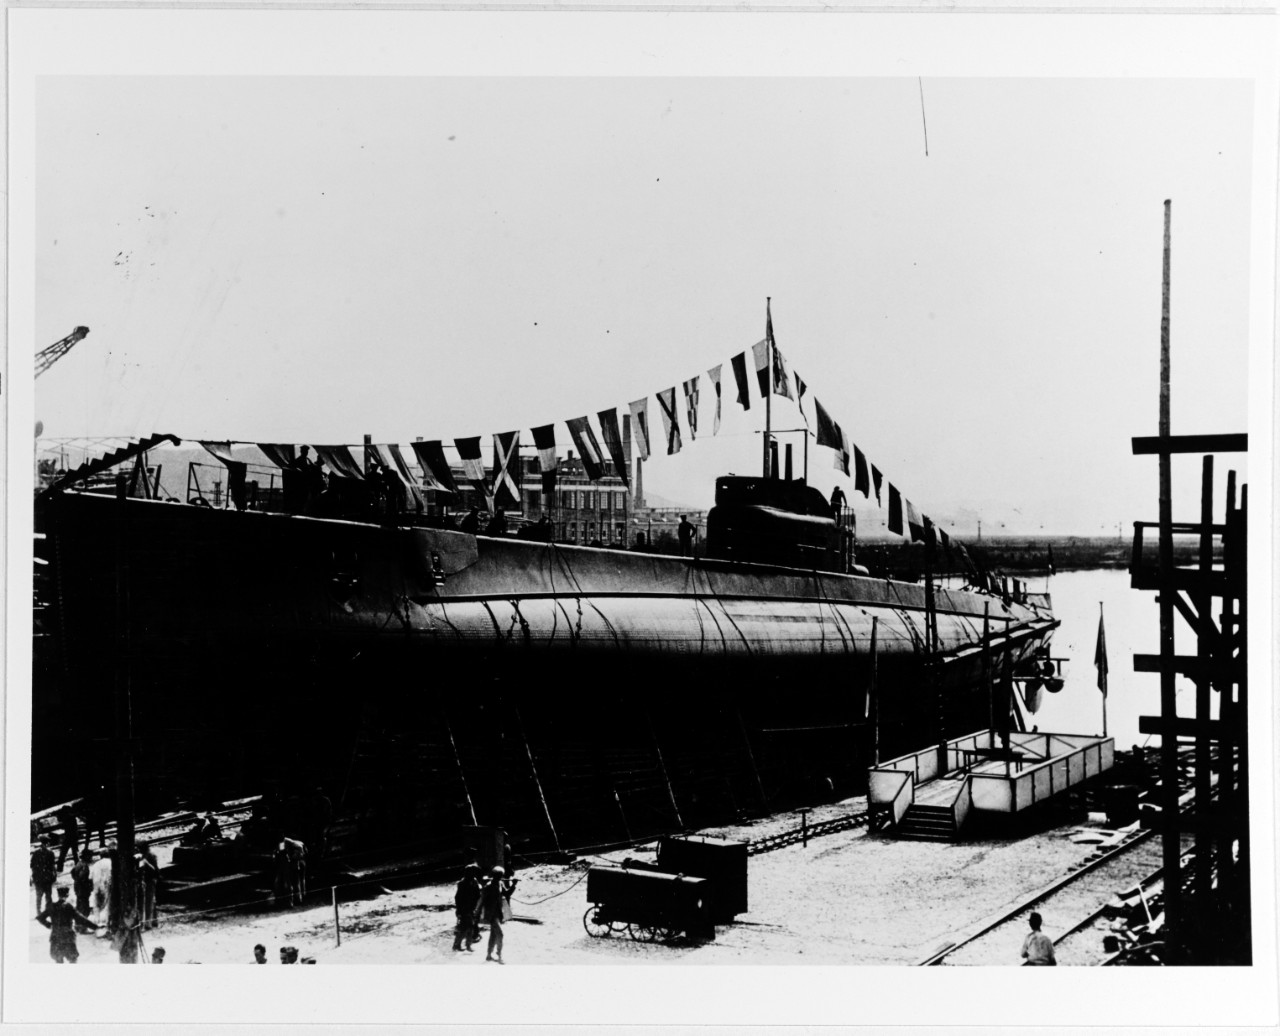 TRICHECO (Italian submarine, 1930-1942)